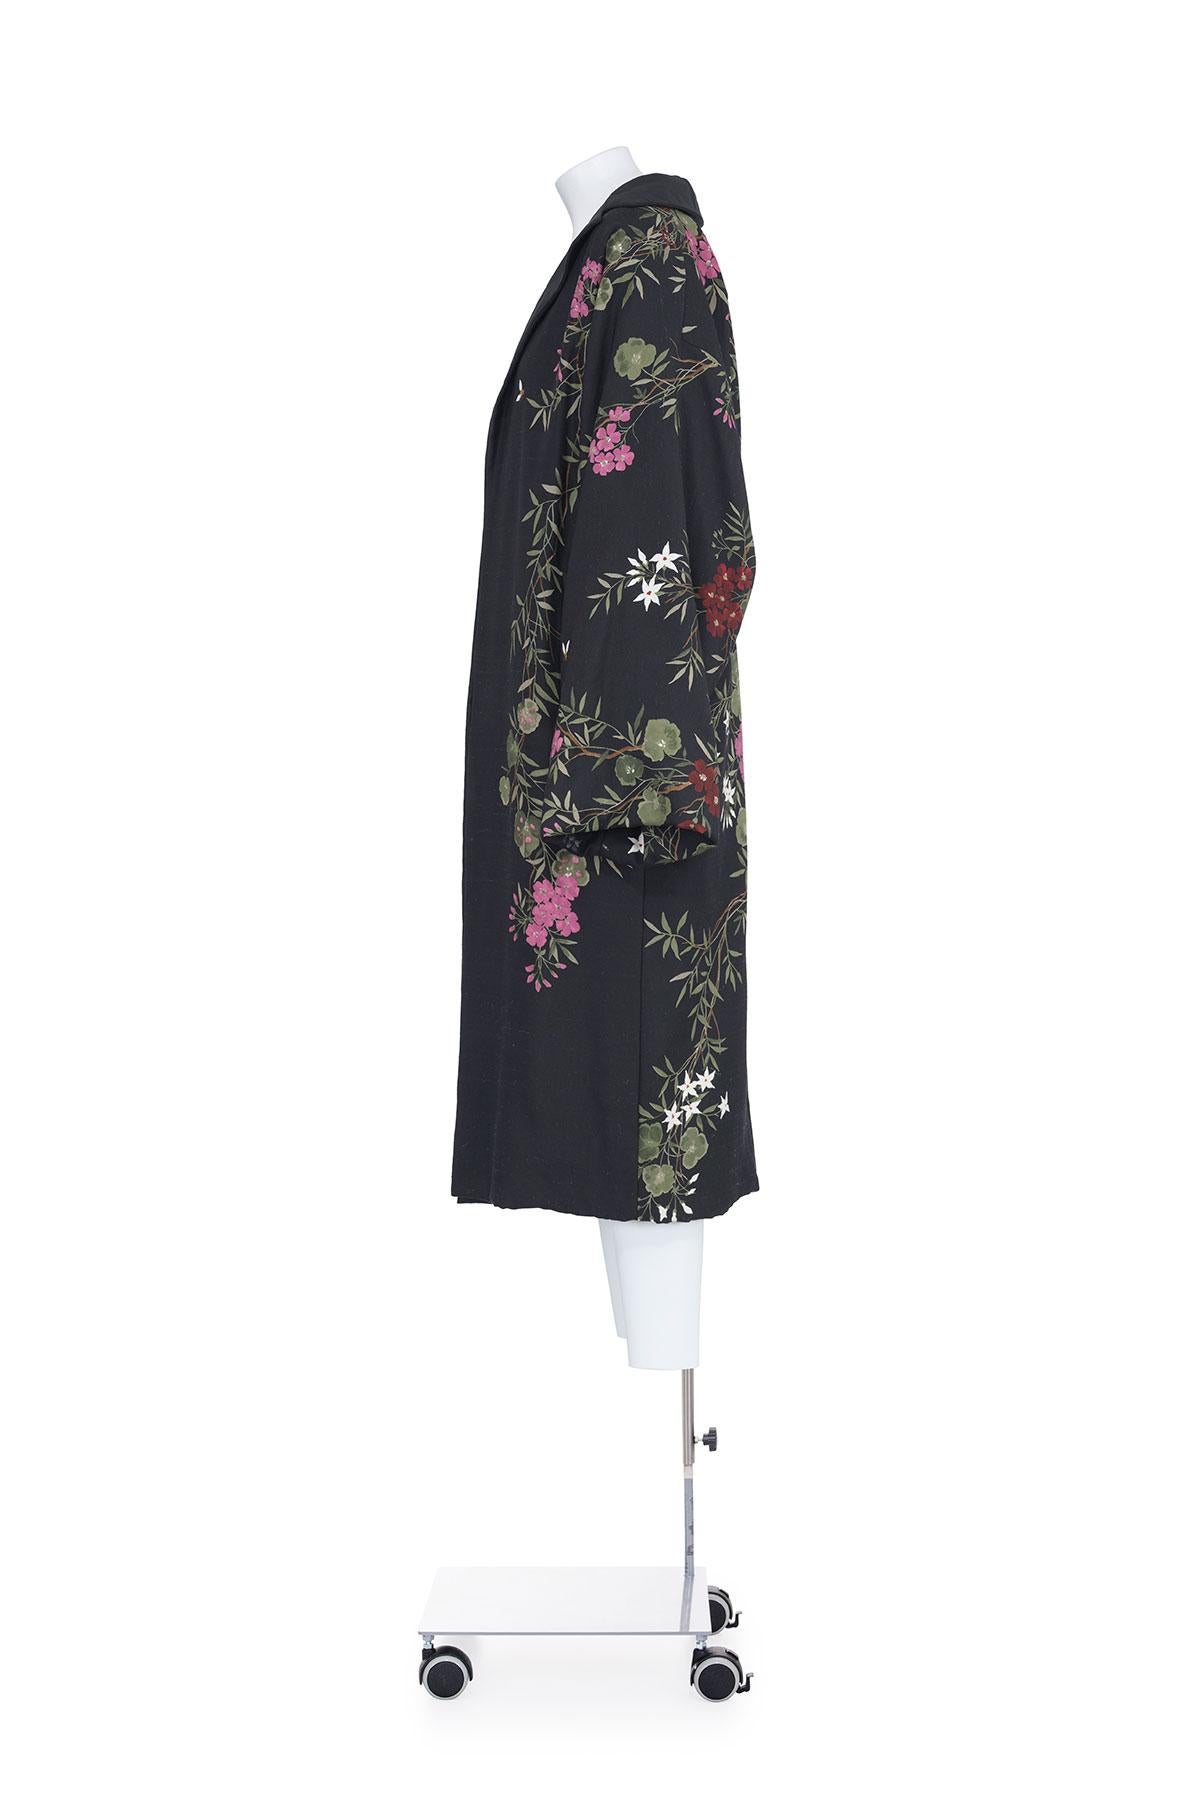 Herbst Winter 1998 seltener Kimono-Mantel aus Shantung mit Blumenmuster von Dolce&Gabbana.
Leicht gepolstert.
Zwei Taschen.
Vollständig gefüttert.
Die Zusammensetzung ist 100% Seide.

